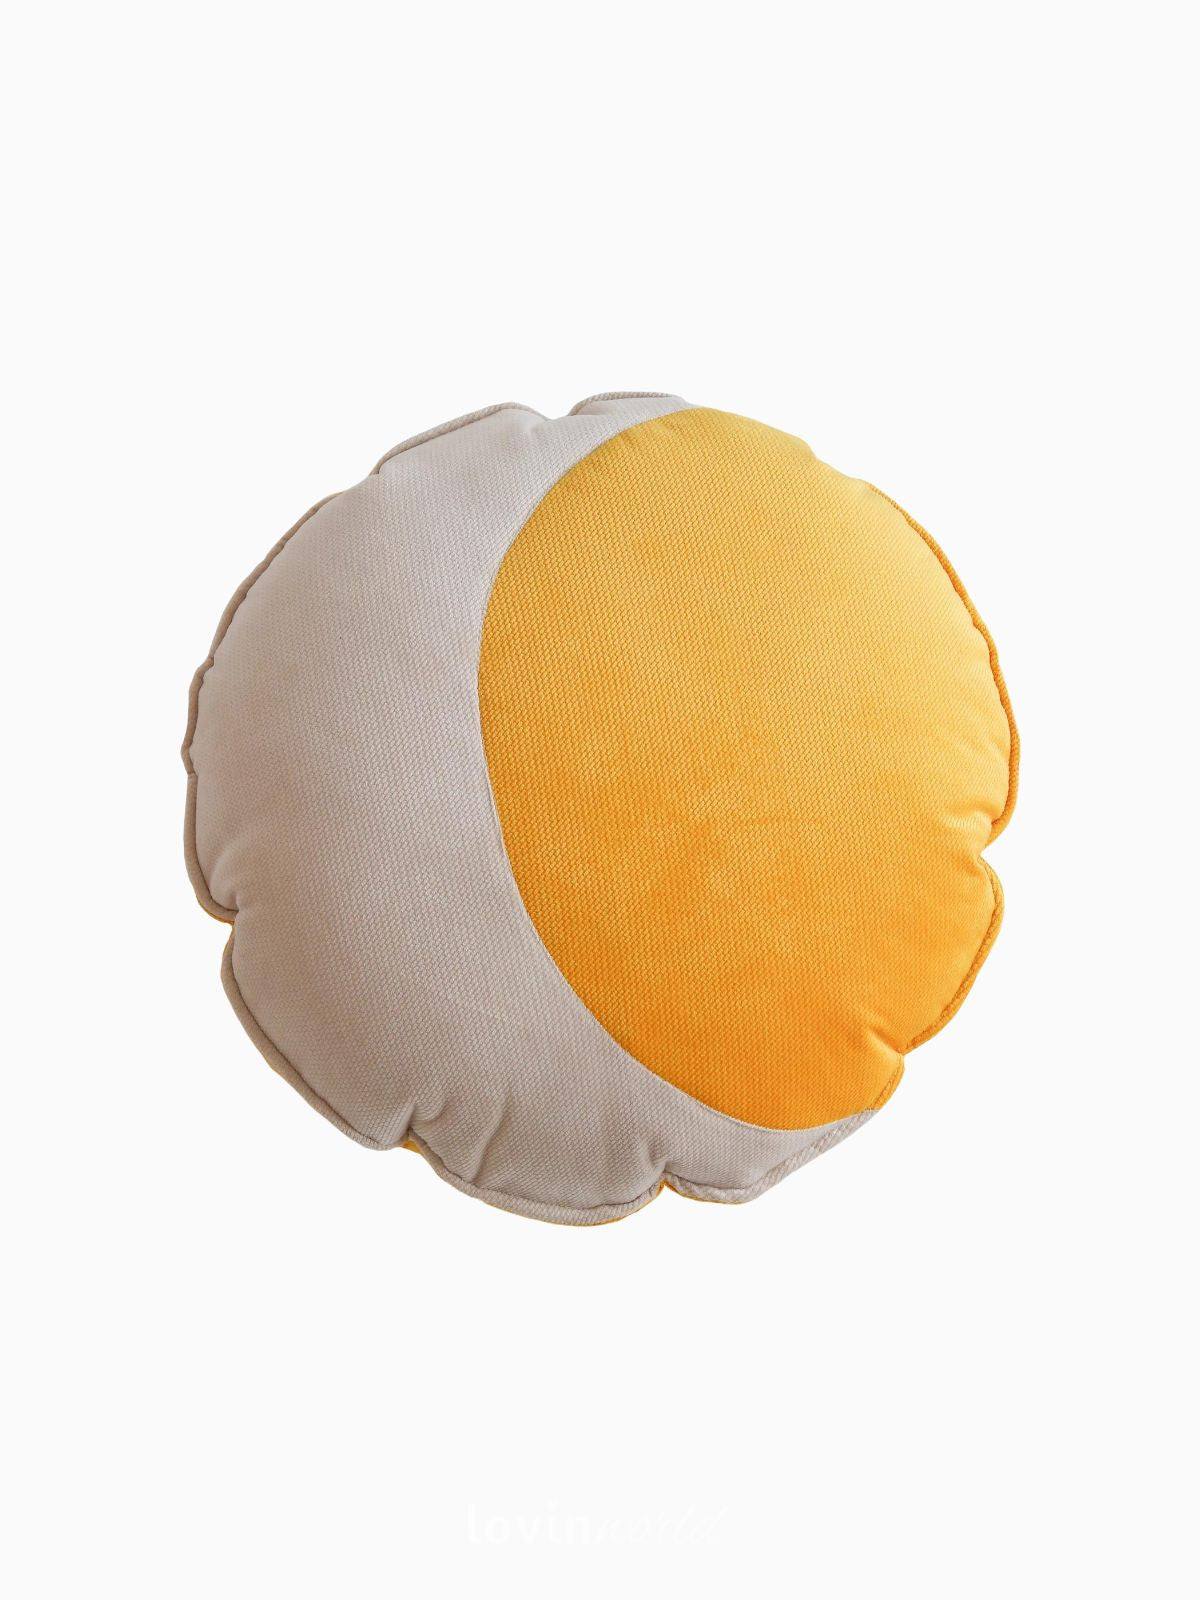 Cuscino Luna 100% velluto in colore beige e giallo 39x39 cm.-1